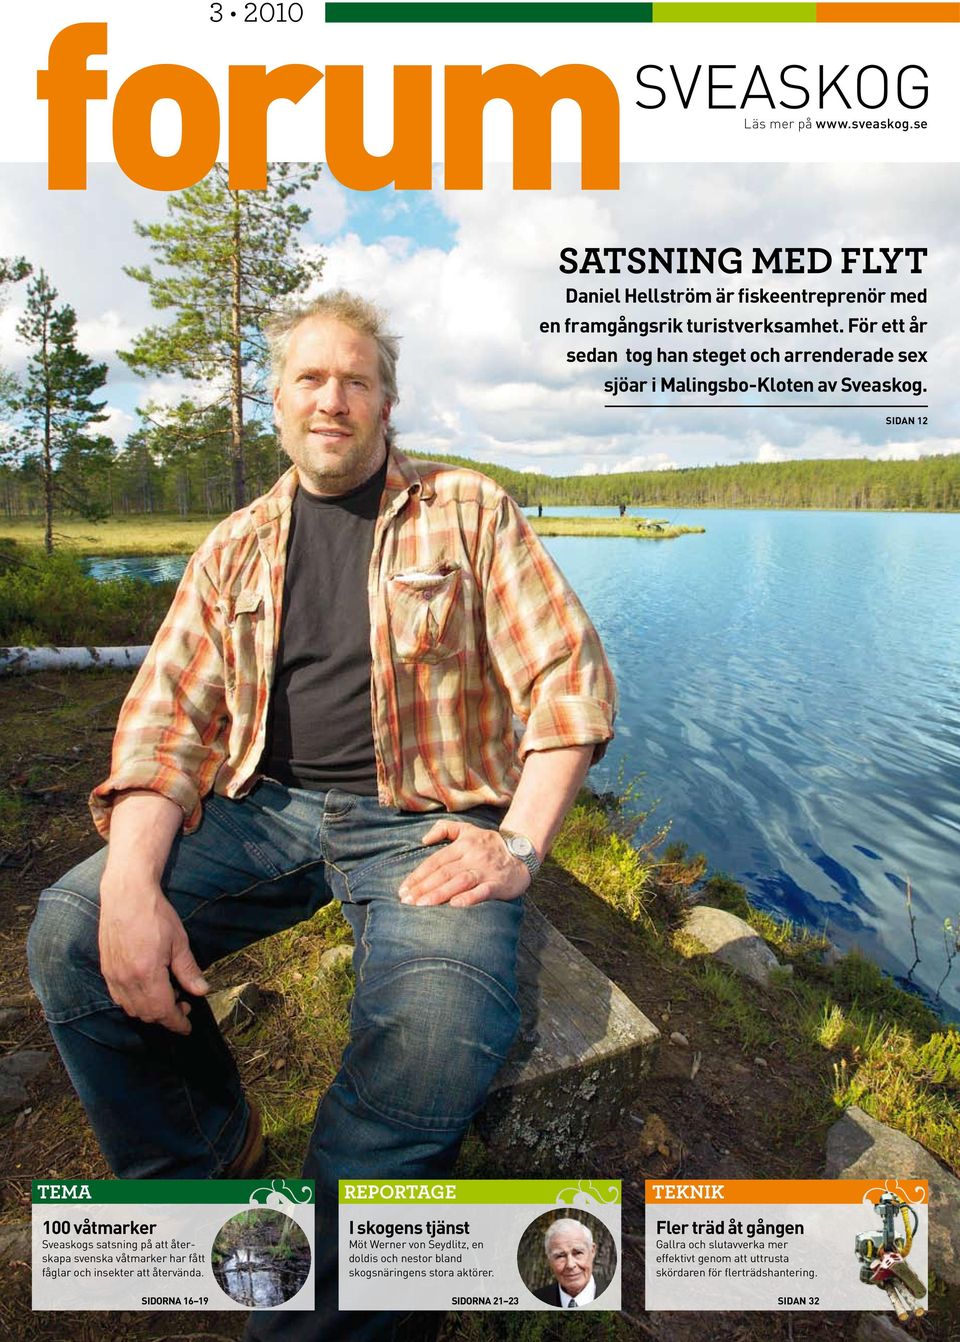 sidan 12 Tema 100 våtmarker Sveaskogs satsning på att återskapa svenska våtmarker har fått fåglar och insekter att återvända.